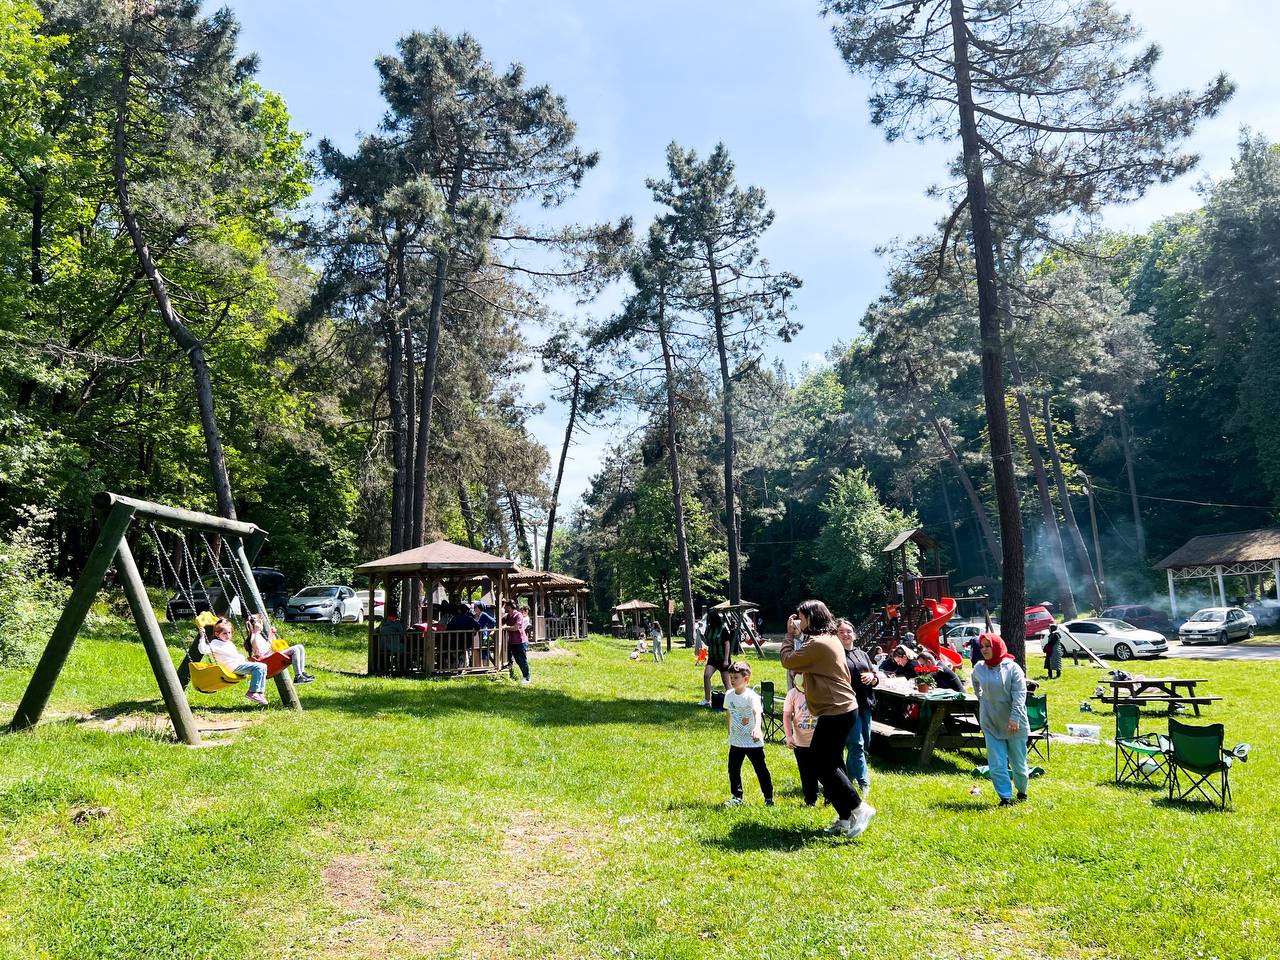 Longoz ve İl Ormanı’na 40 bin ziyaretçi giriş yaptı. Bayramda turistik noktalar ziyaretçi akınına uğradı